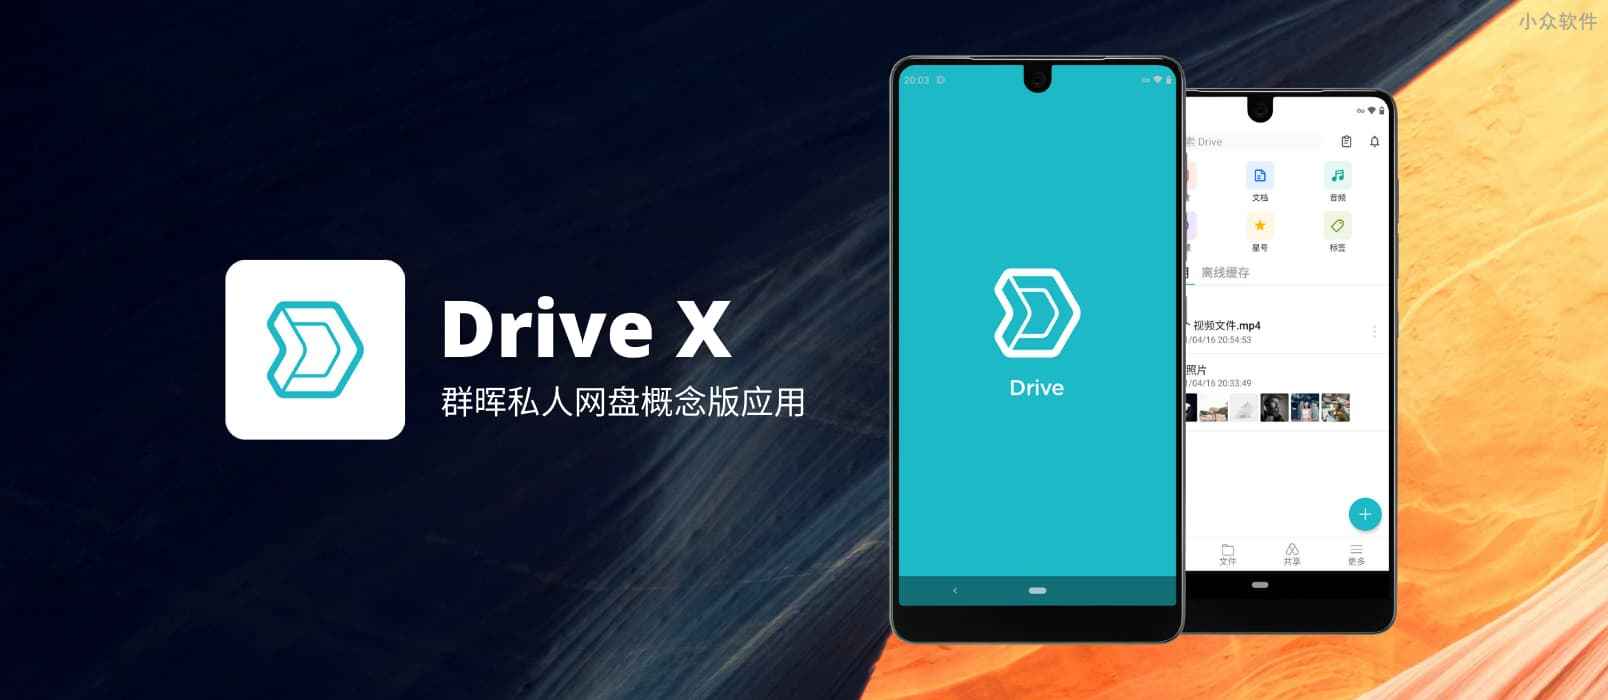 群晖发布概念版网盘应用 Drive X，做只属于你的全能网盘，自动备份照片、视频，自动备份微信